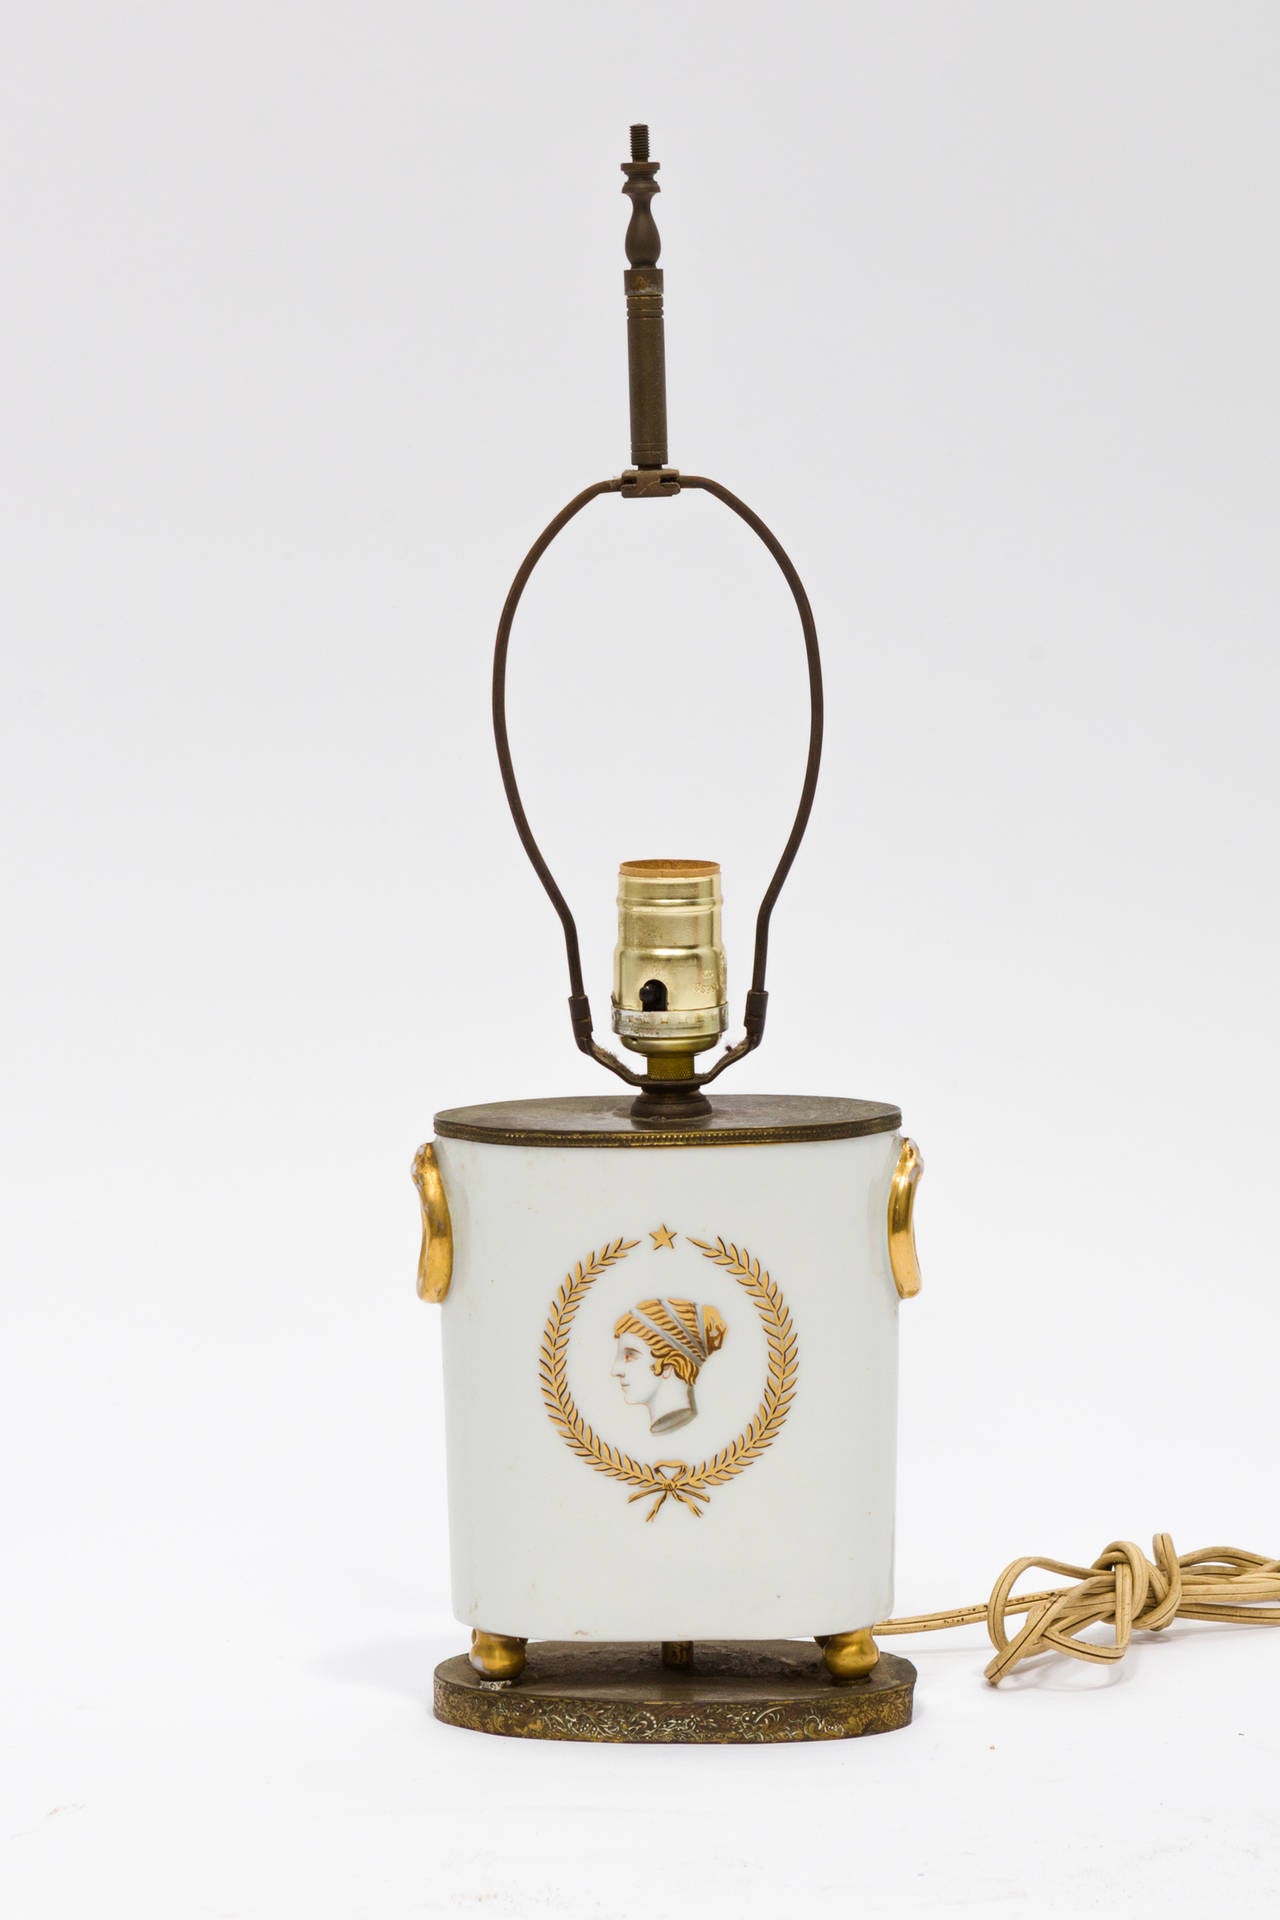 Petite lampe de table des années 1930 avec des accents dorés.

De la base au bas de la douille : 7.25